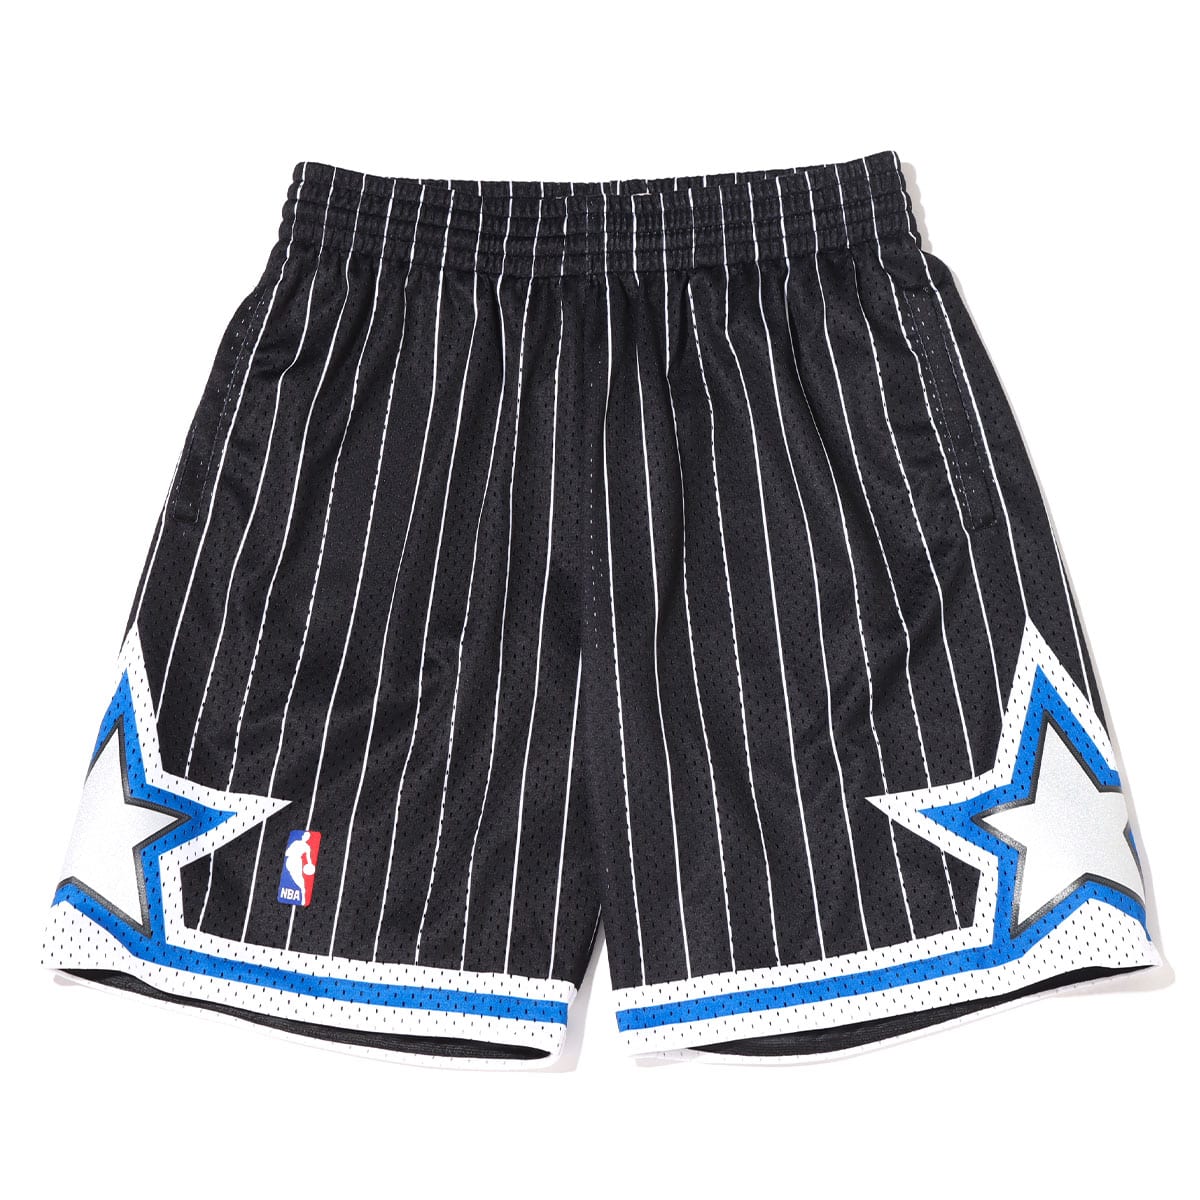 Mitchell & Ness NBA 94-95 Orlando Magic Swingman Alternate Shorts Size  Small